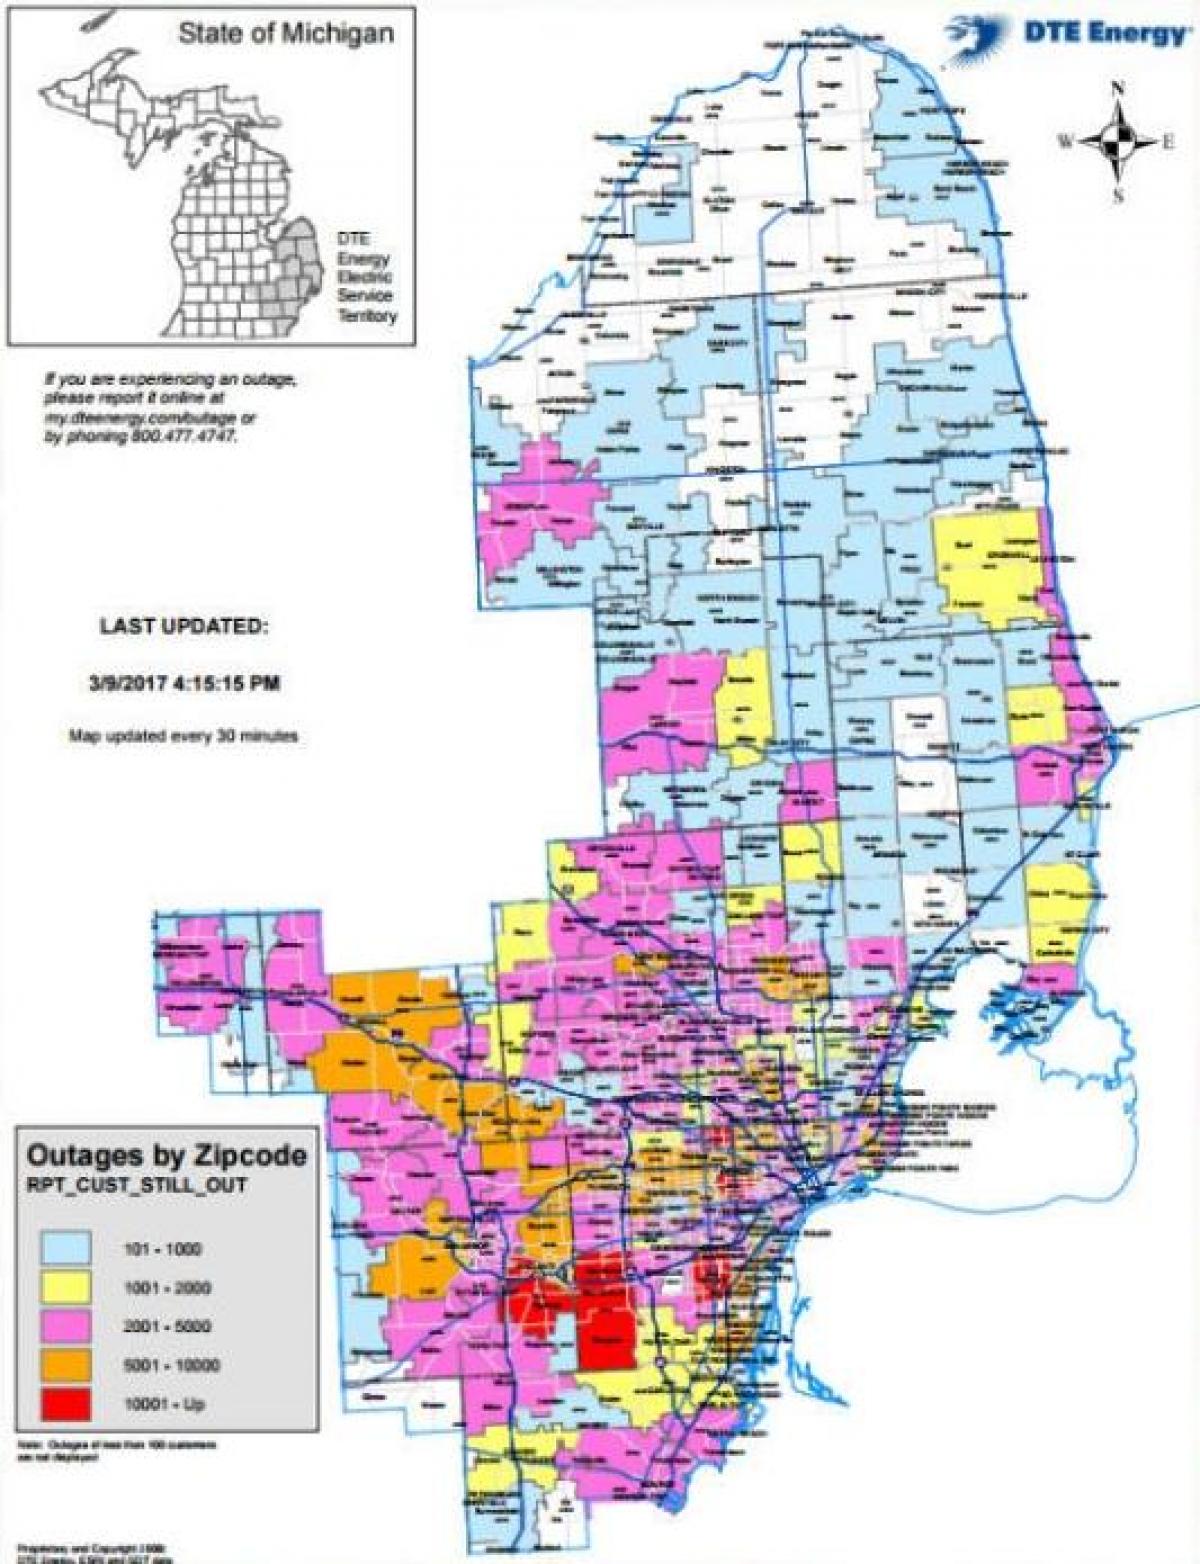 Detroit edison argindarra mapa